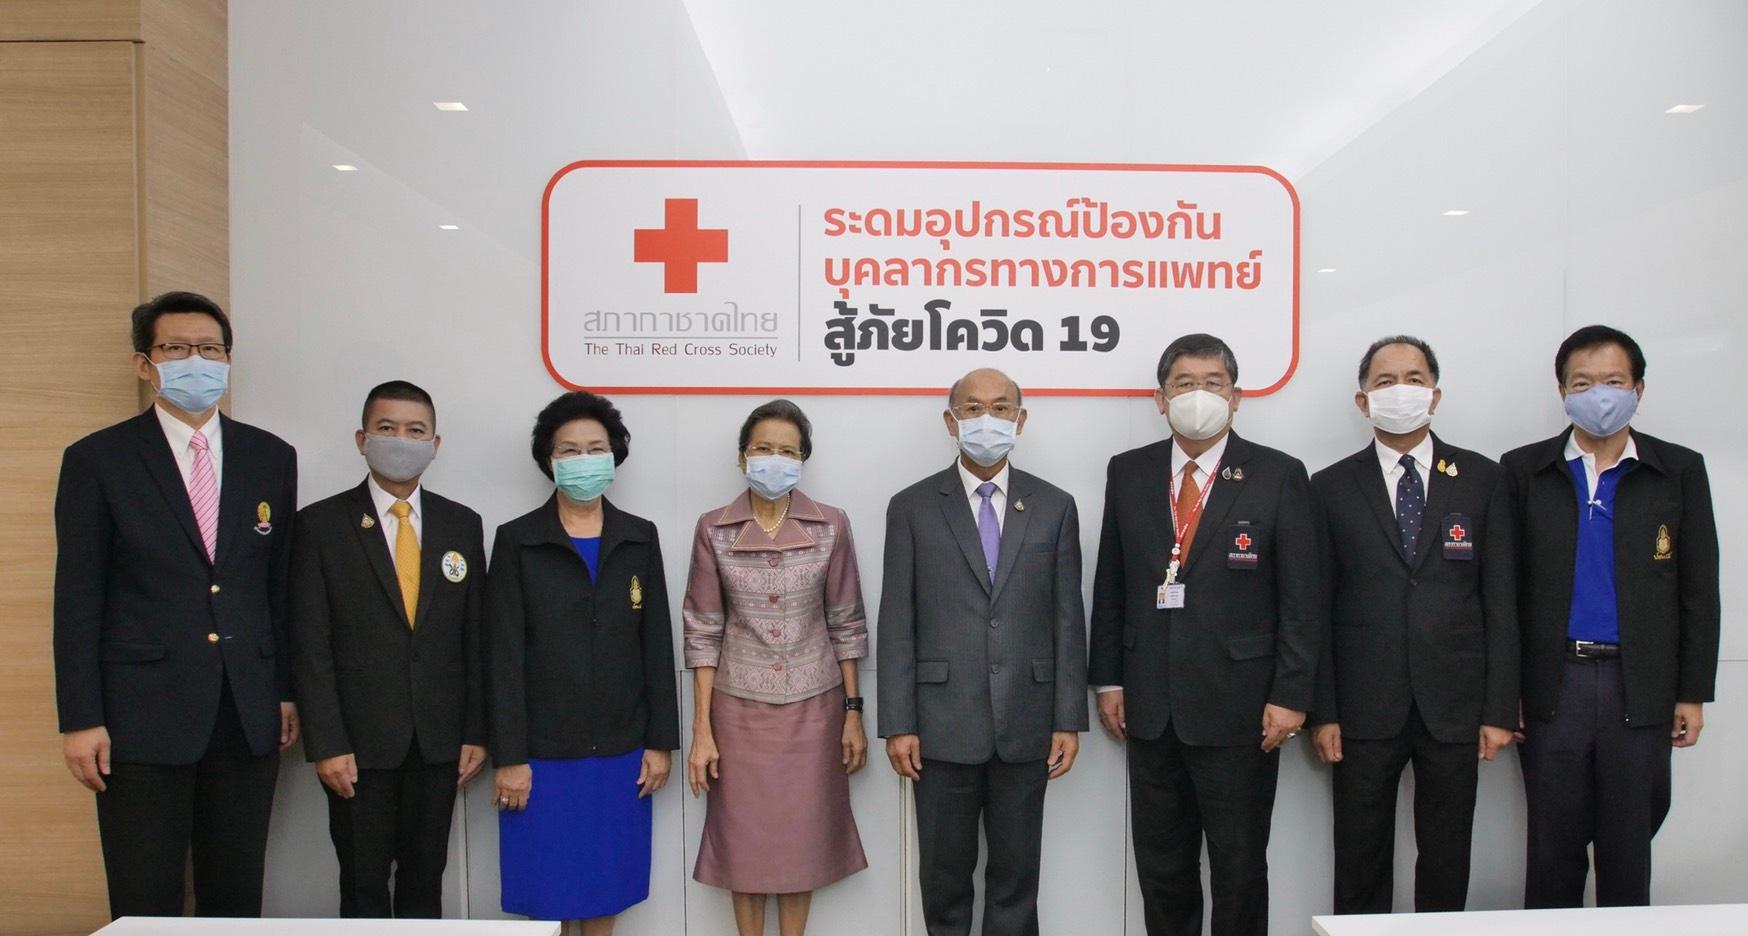 ภาพข่าว: สภากาชาดไทยร่วมโครงการอาสาร่วมใจ Fight COVID รับบริจาค หน้ากาก N 95 และ PPE เพื่อส่งต่อไปยังบุคลากรทางการแพทย์ทั่วประเทศ